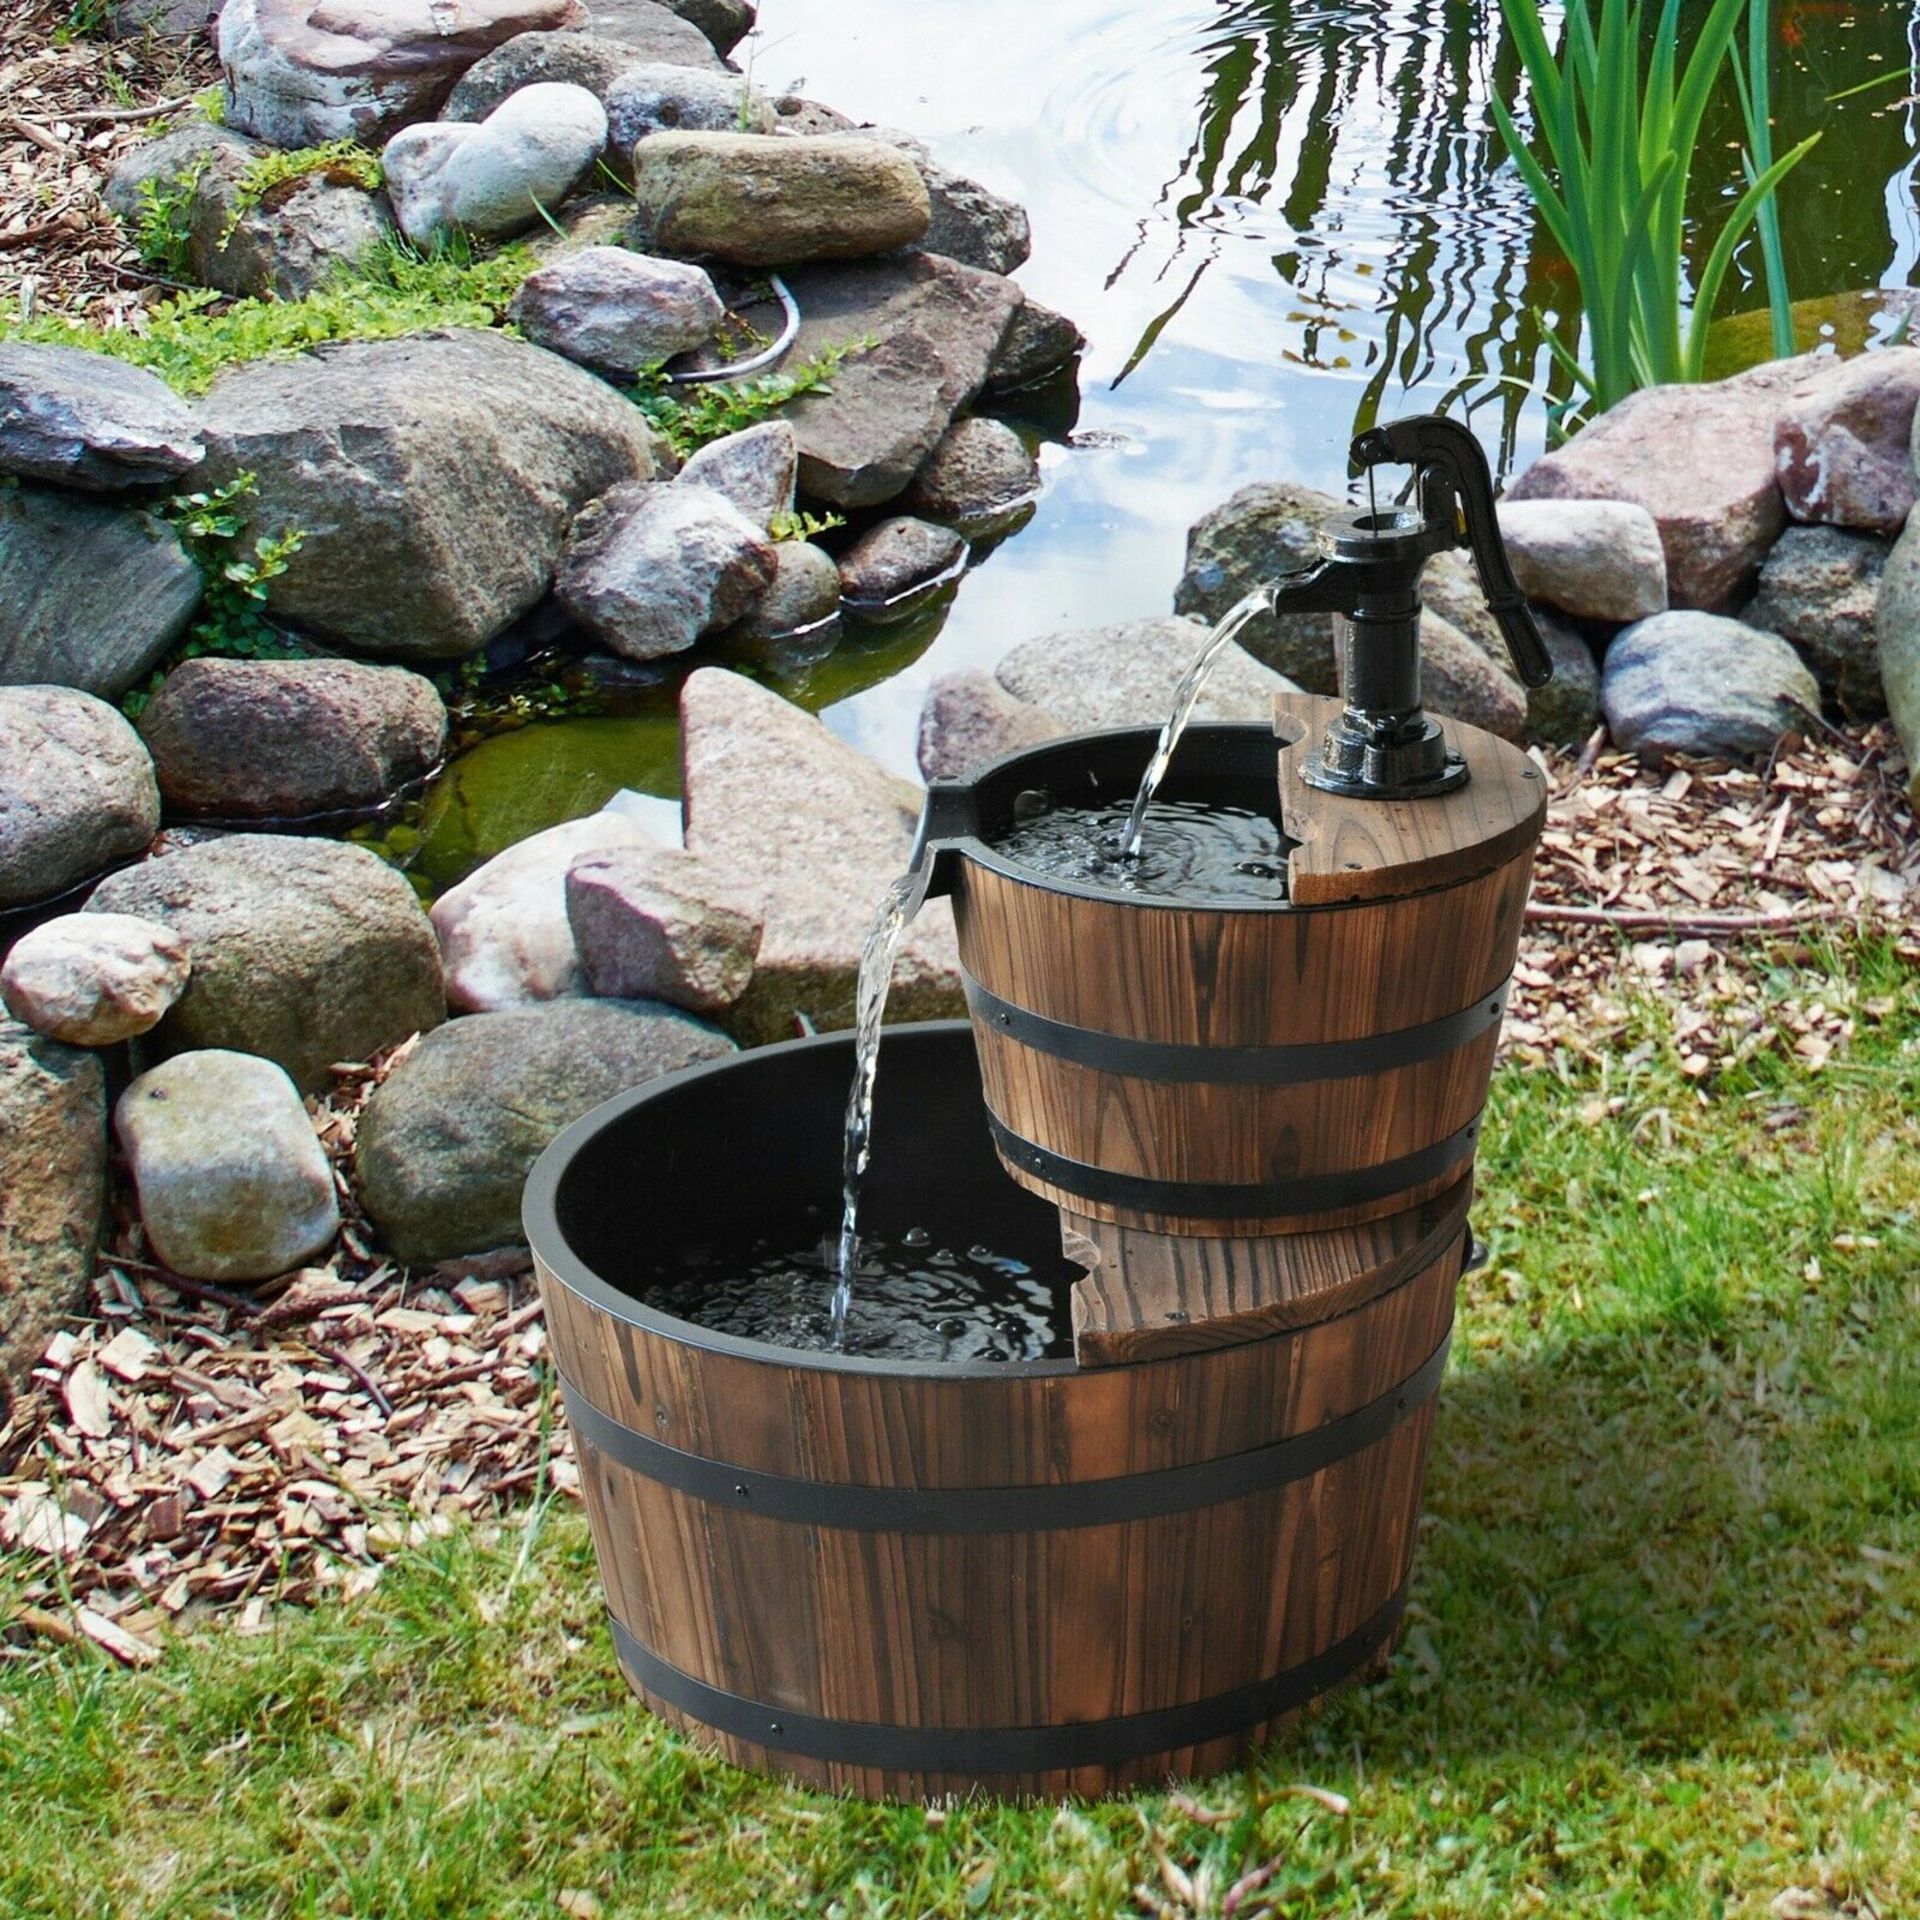 Garden Barrel Water Feature Made From Fir Wood And Steel Construction 2-Tier Wooden Barrels,